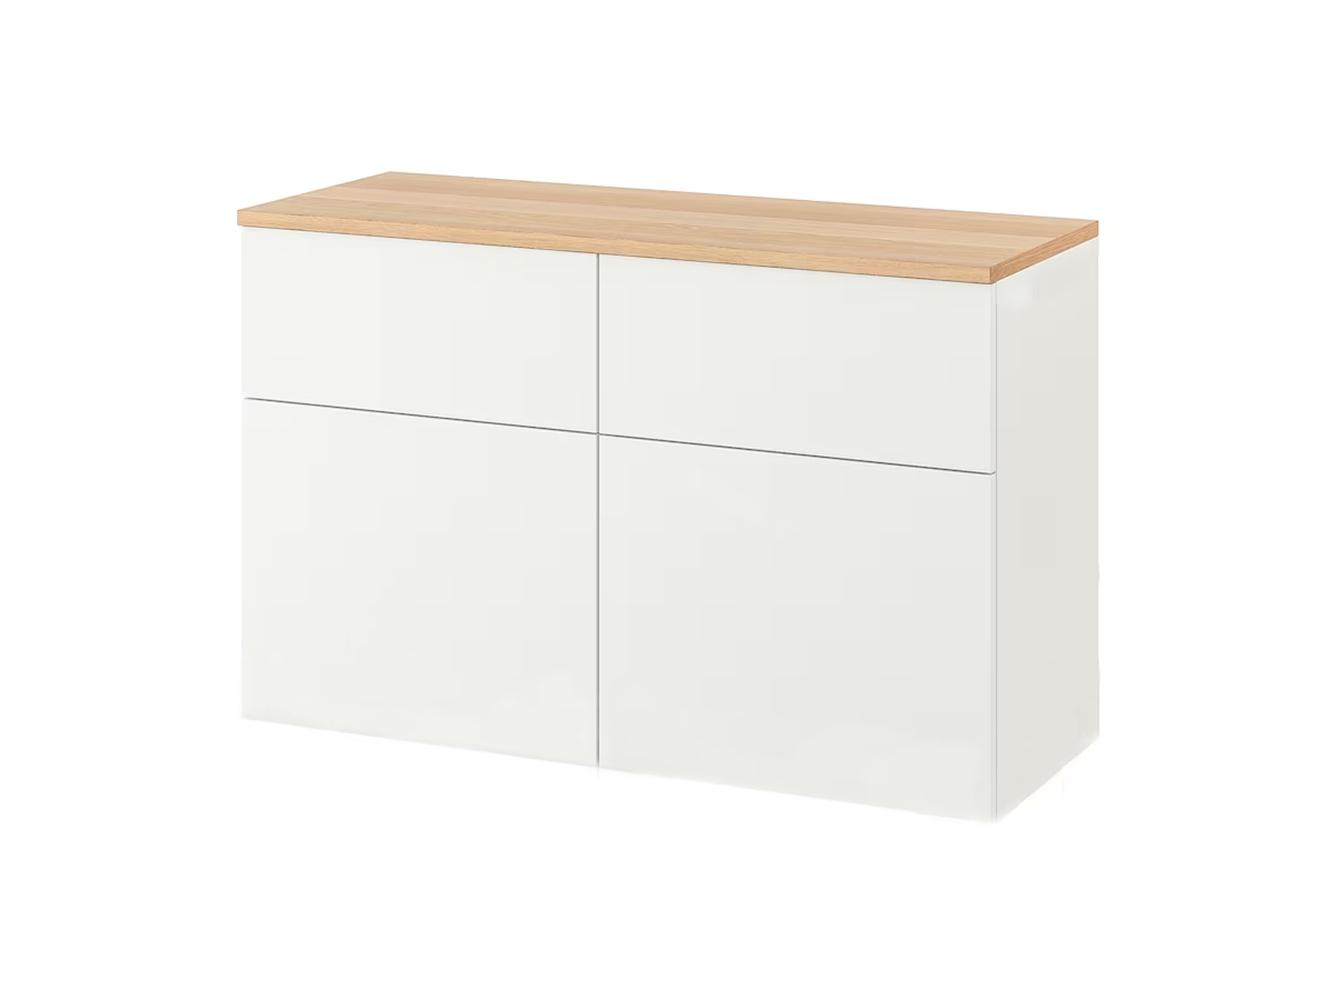 Комод Беста 115 white ИКЕА (IKEA) изображение товара